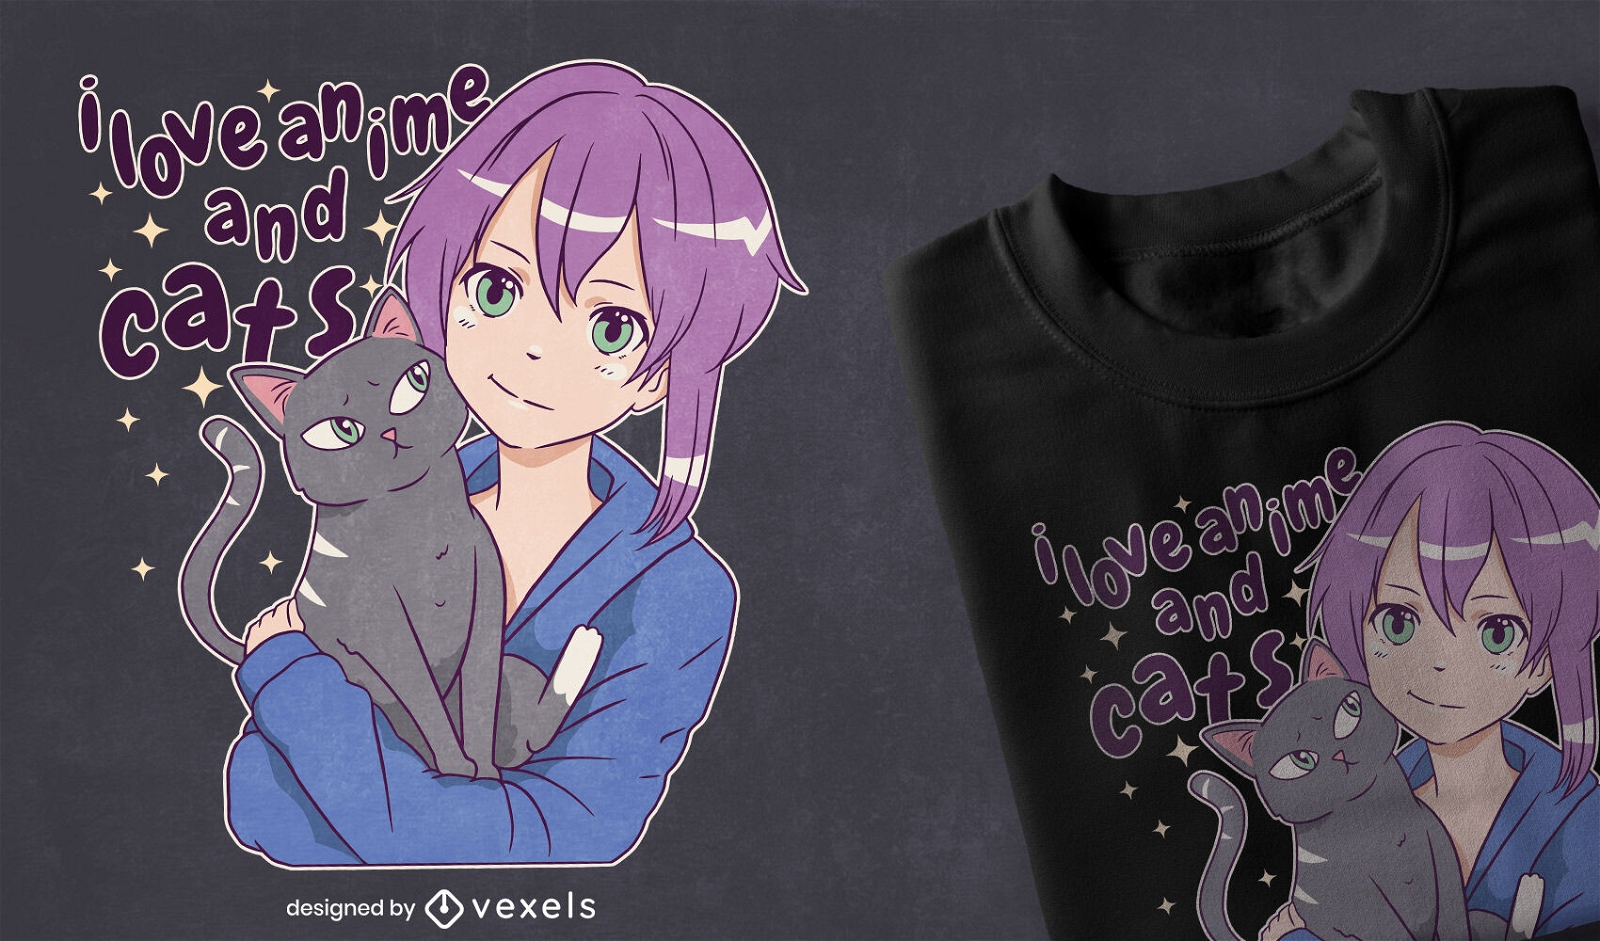 Me encanta el dise?o de camiseta de anime y gatos.